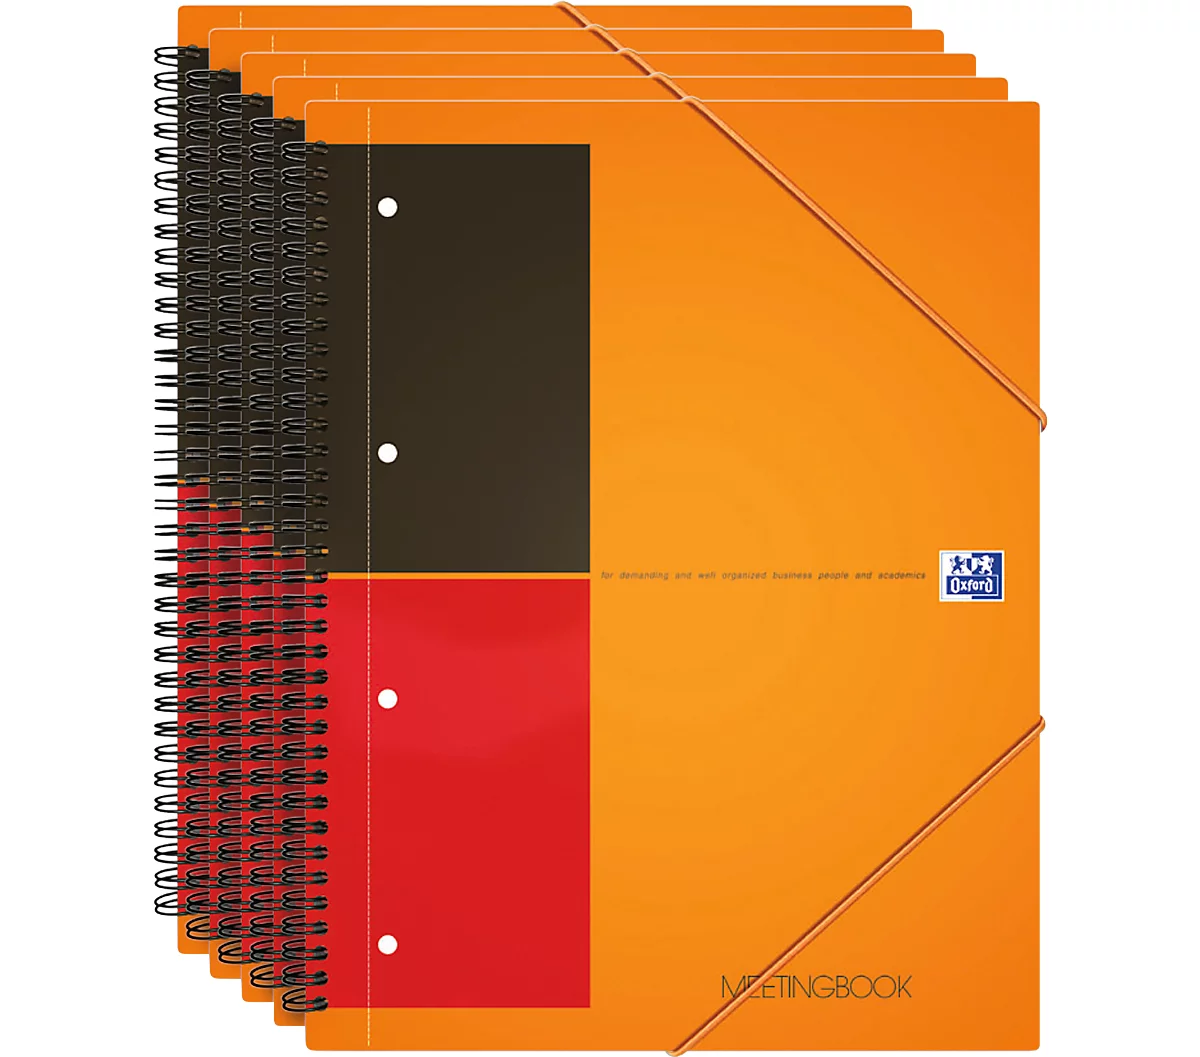 Notizbuch Oxford International, DIN A4, Optik Paper®, 80g/m², 80 Blatt, 5 Stück, kariert